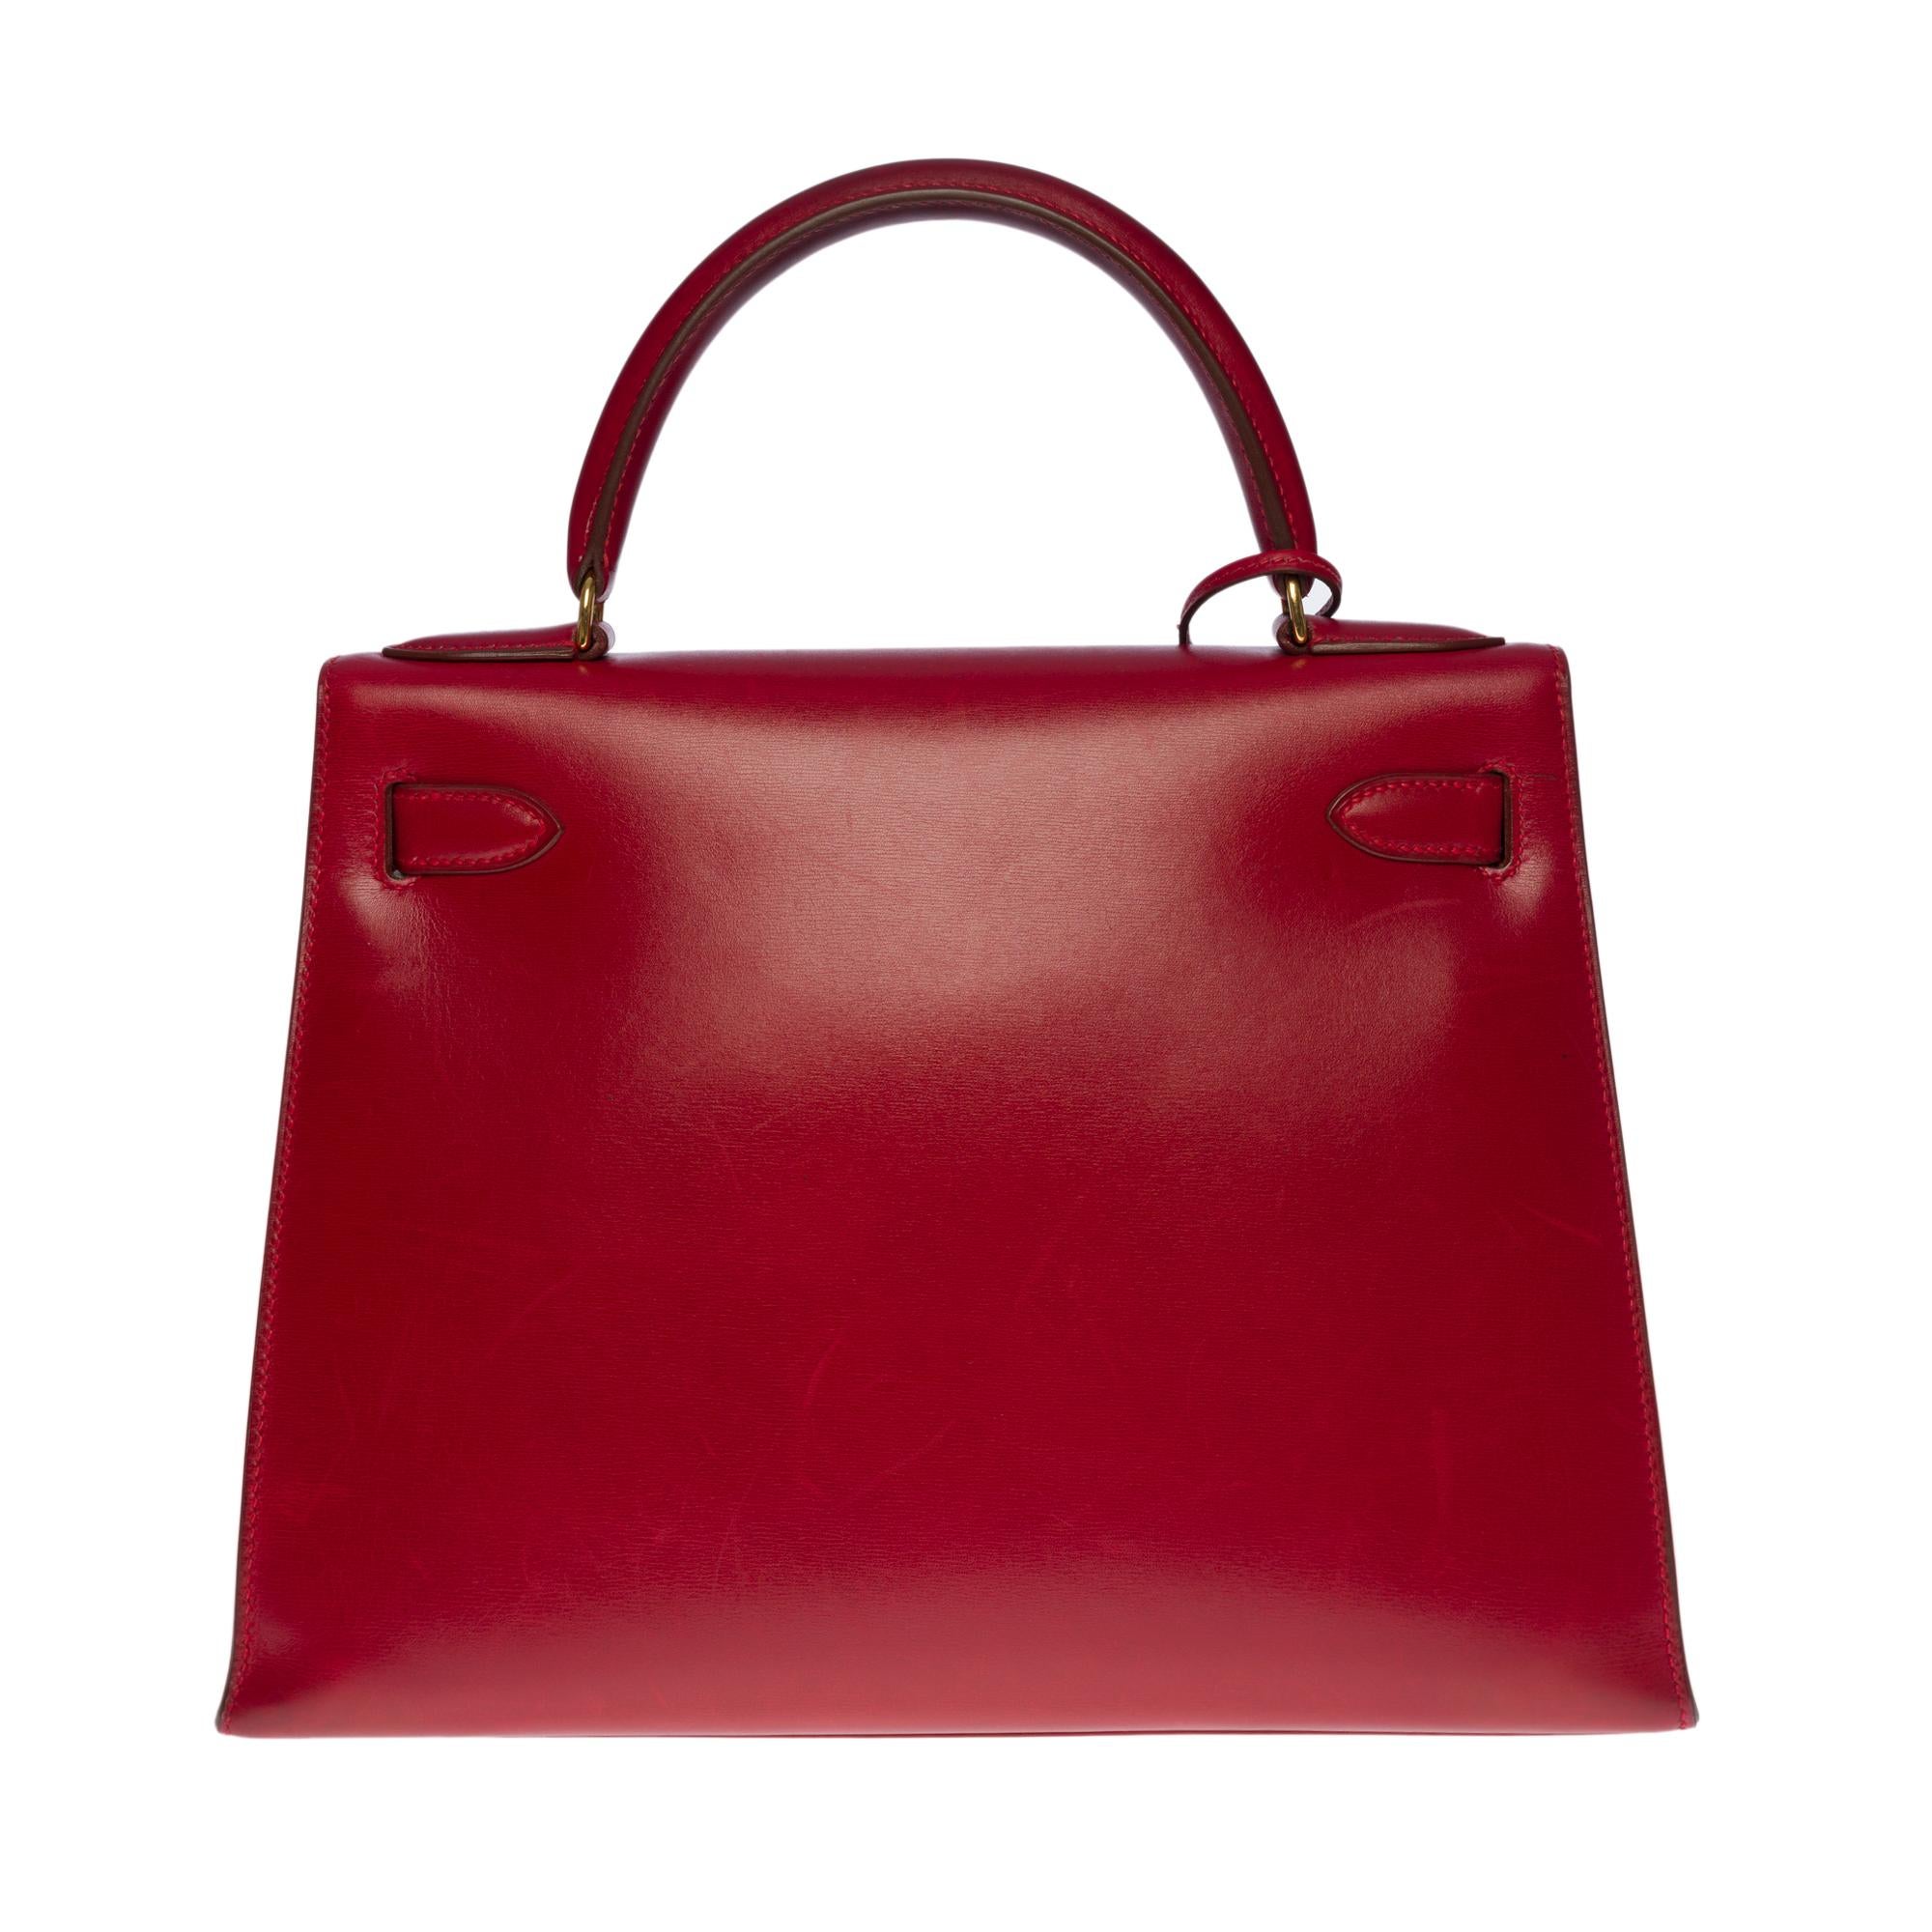 Außergewöhnliche Hermes Kelly 28cm sellier Handtasche in Box Kalbsleder,  vergoldete Metallbeschläge, roter Ledergriff zum Tragen in der Hand

Klappenverschluss
Rotes Lederfutter, eine Reißverschlusstasche, zwei aufgesetzte Taschen
Signatur: 